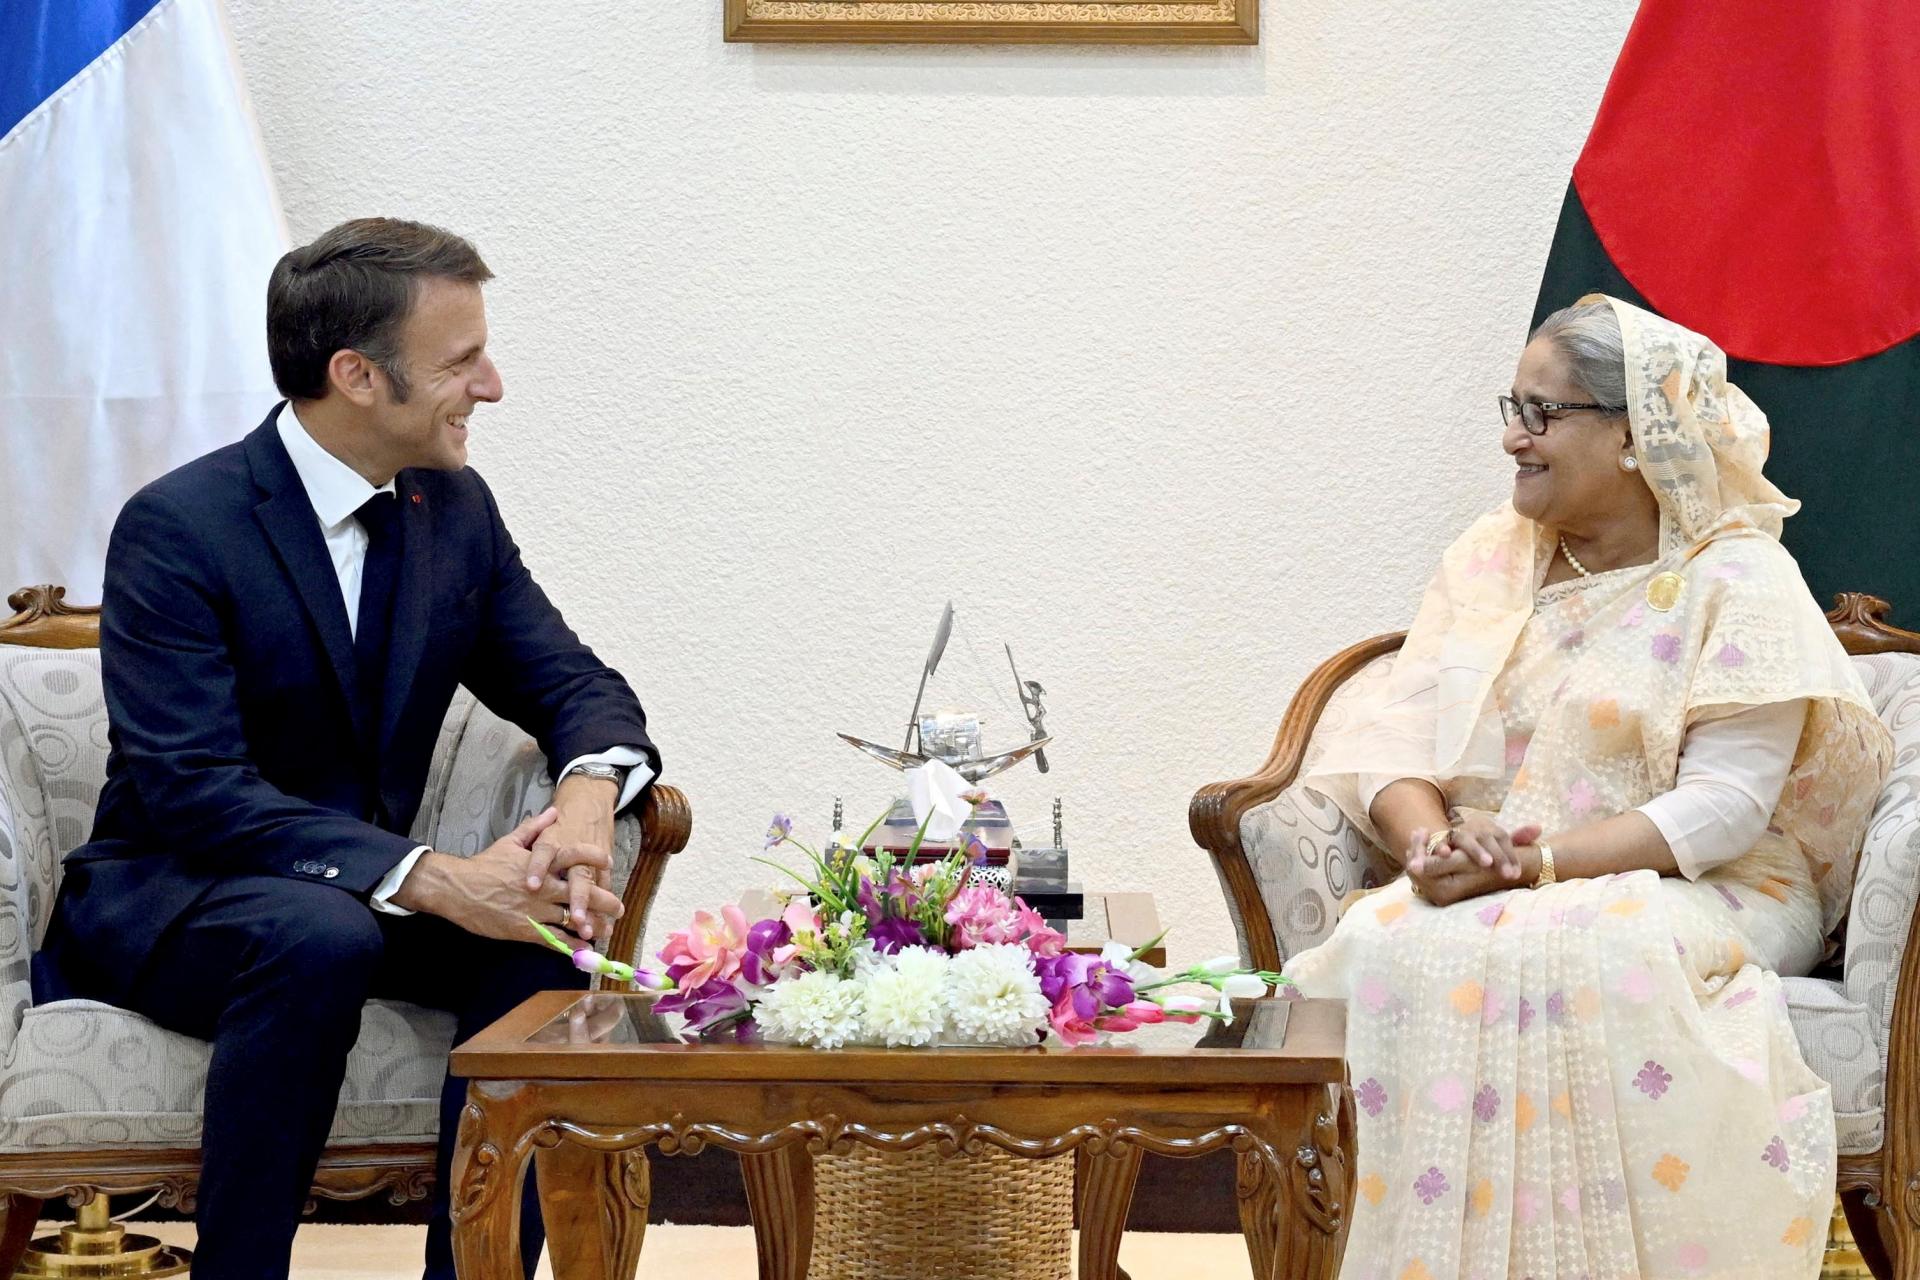 Francúzsko pomôže Bangladéšu pôžičkami na infraštruktúru aj satelitom, vyhlásil Macron